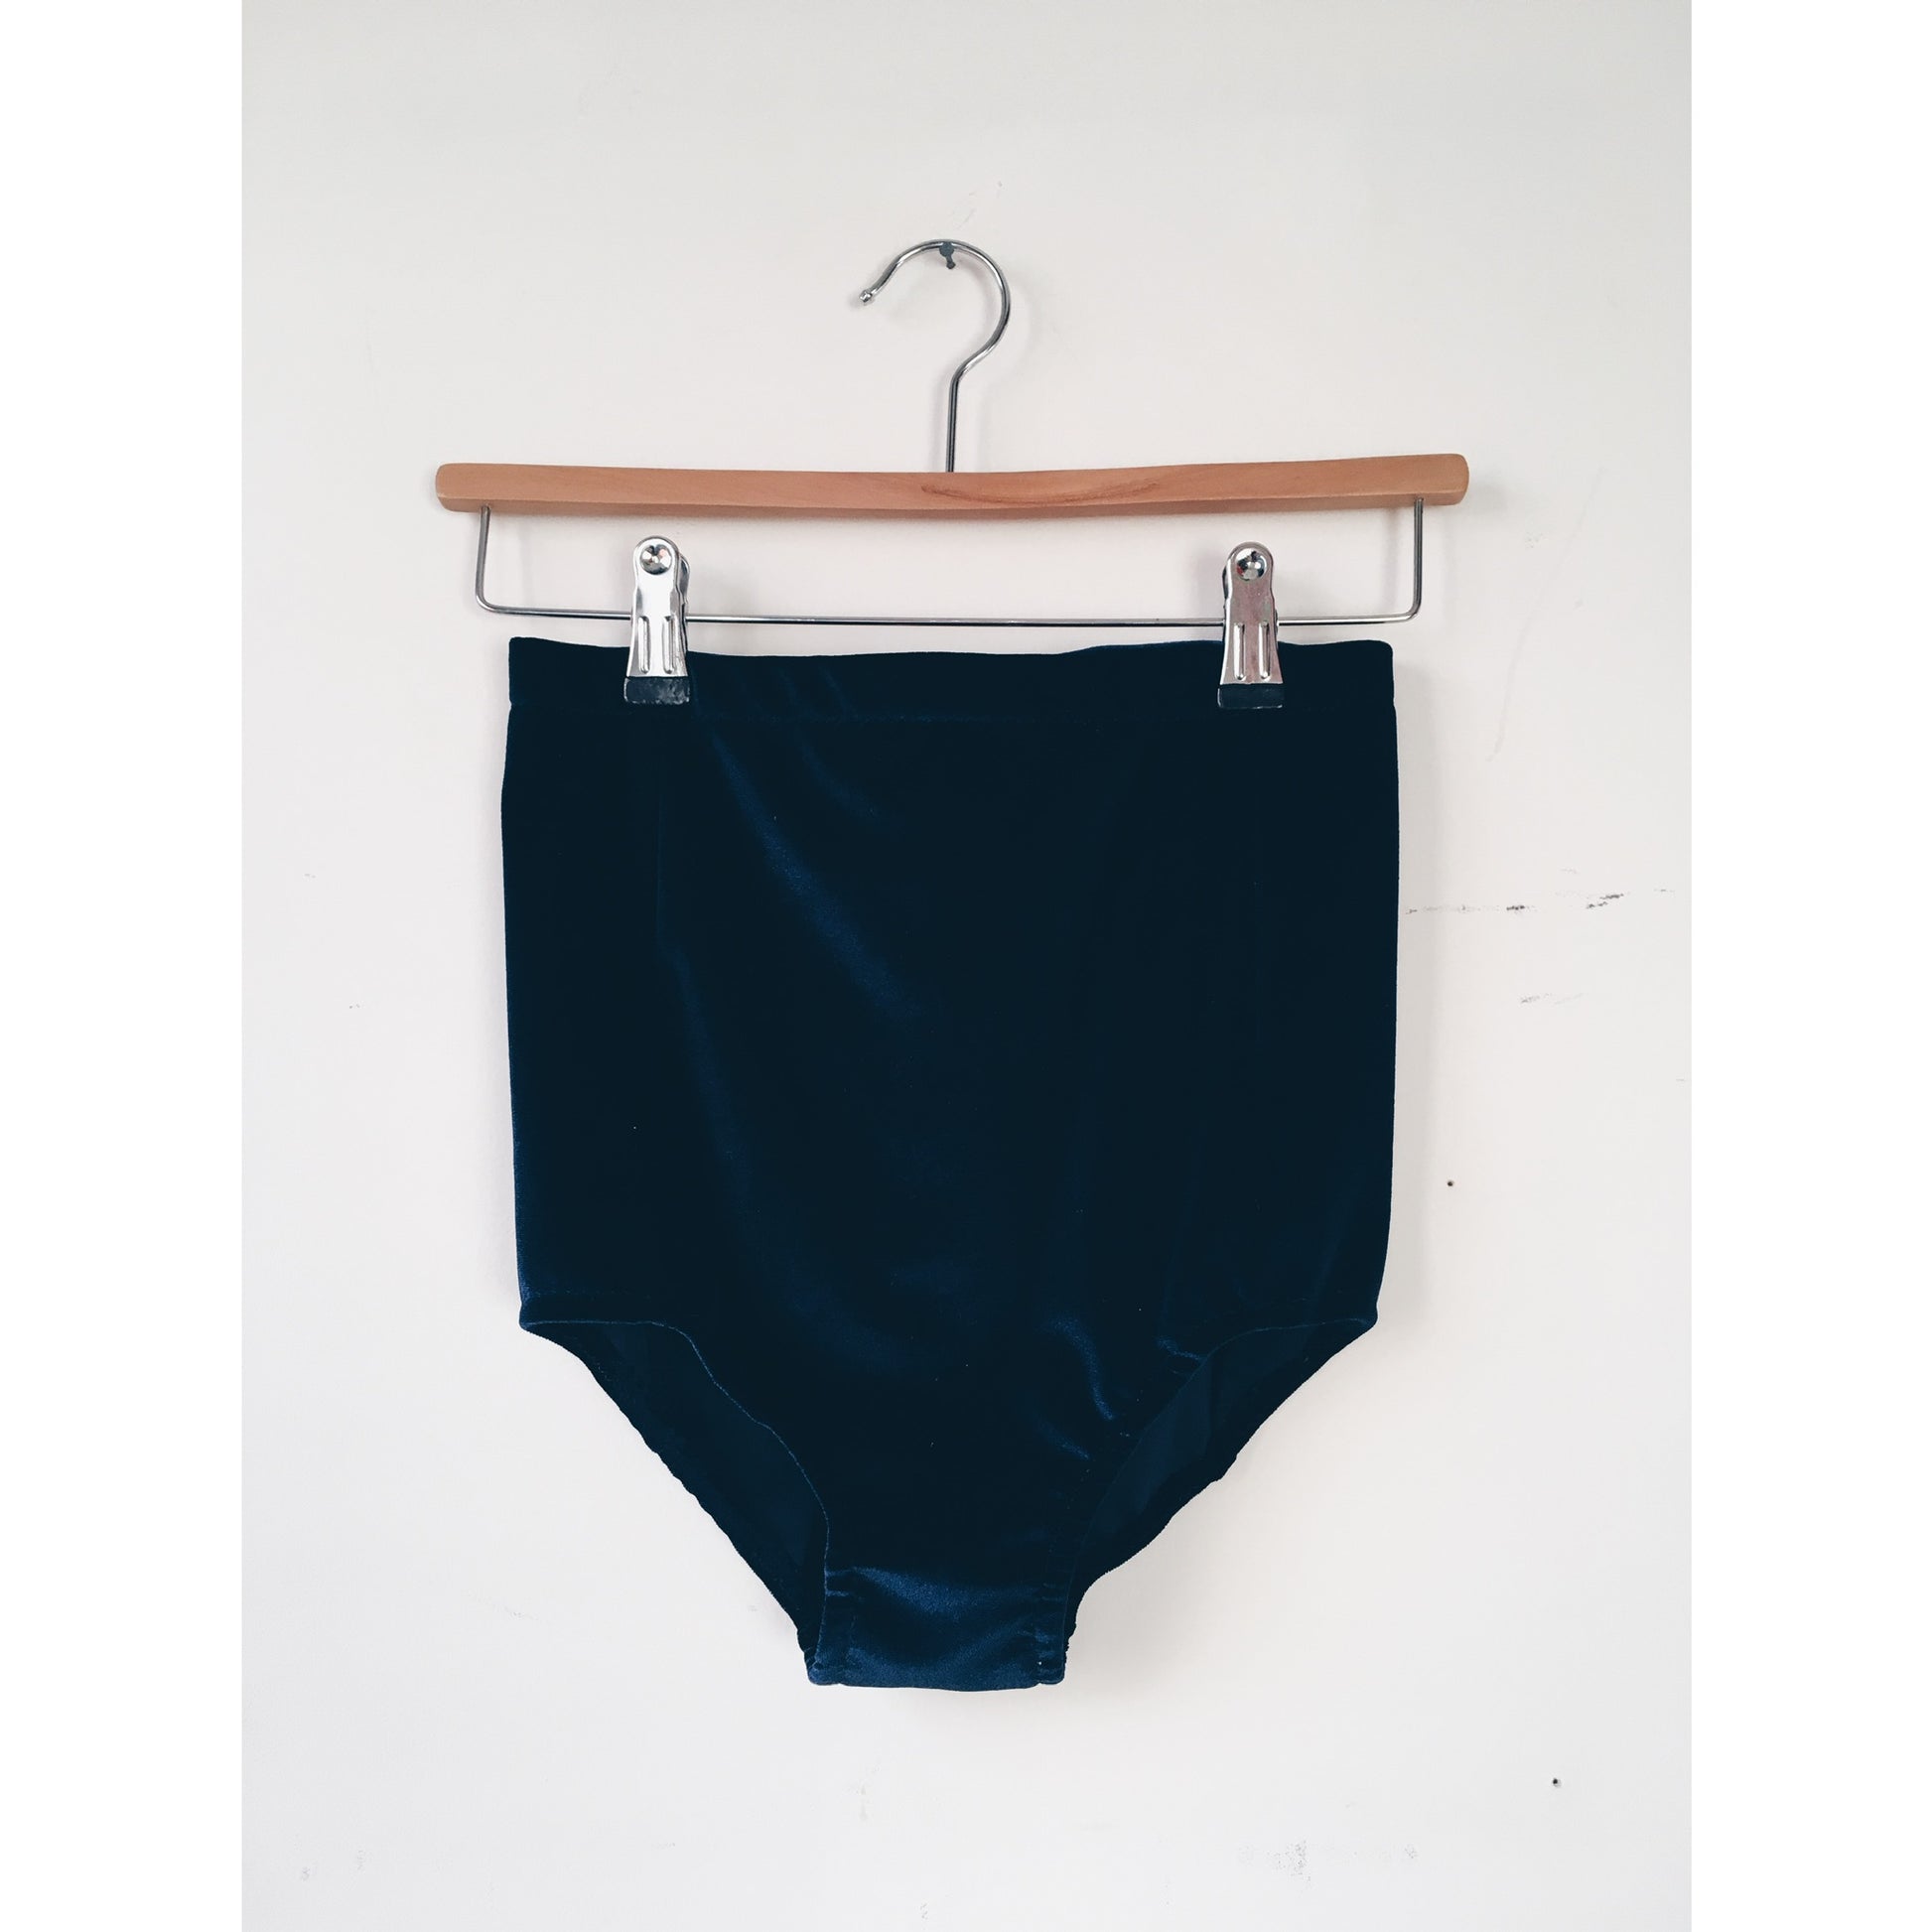 Midnight blue hight waisted velvet shorts on a wooden hanger against a white background